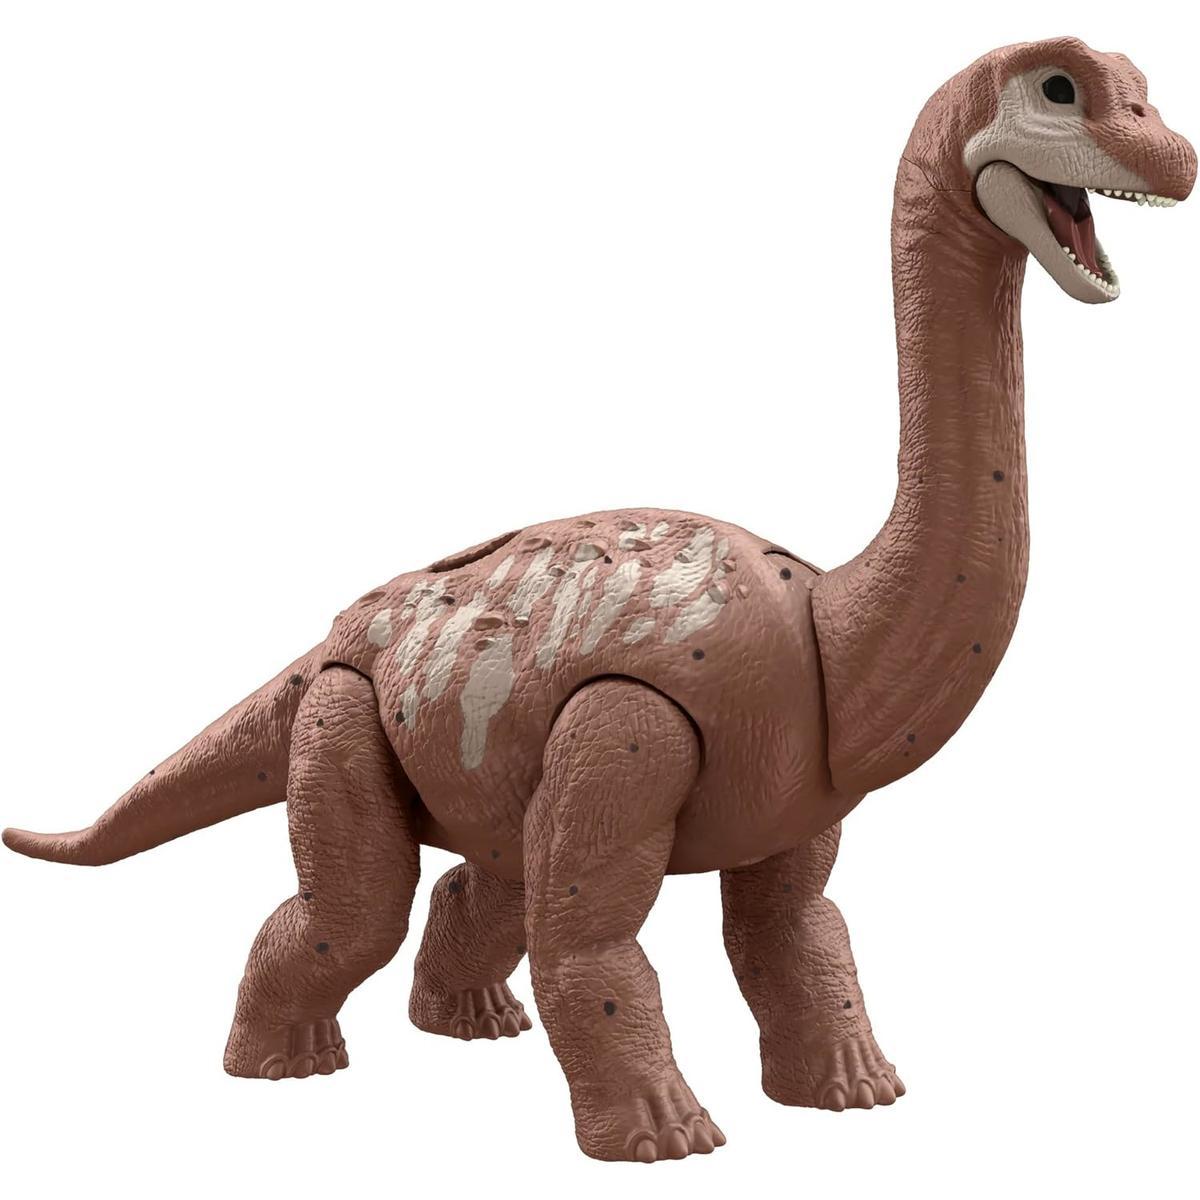 Jurassic world dino trackers park jurajski figurka dinozaur brachiosaurus nr. 2